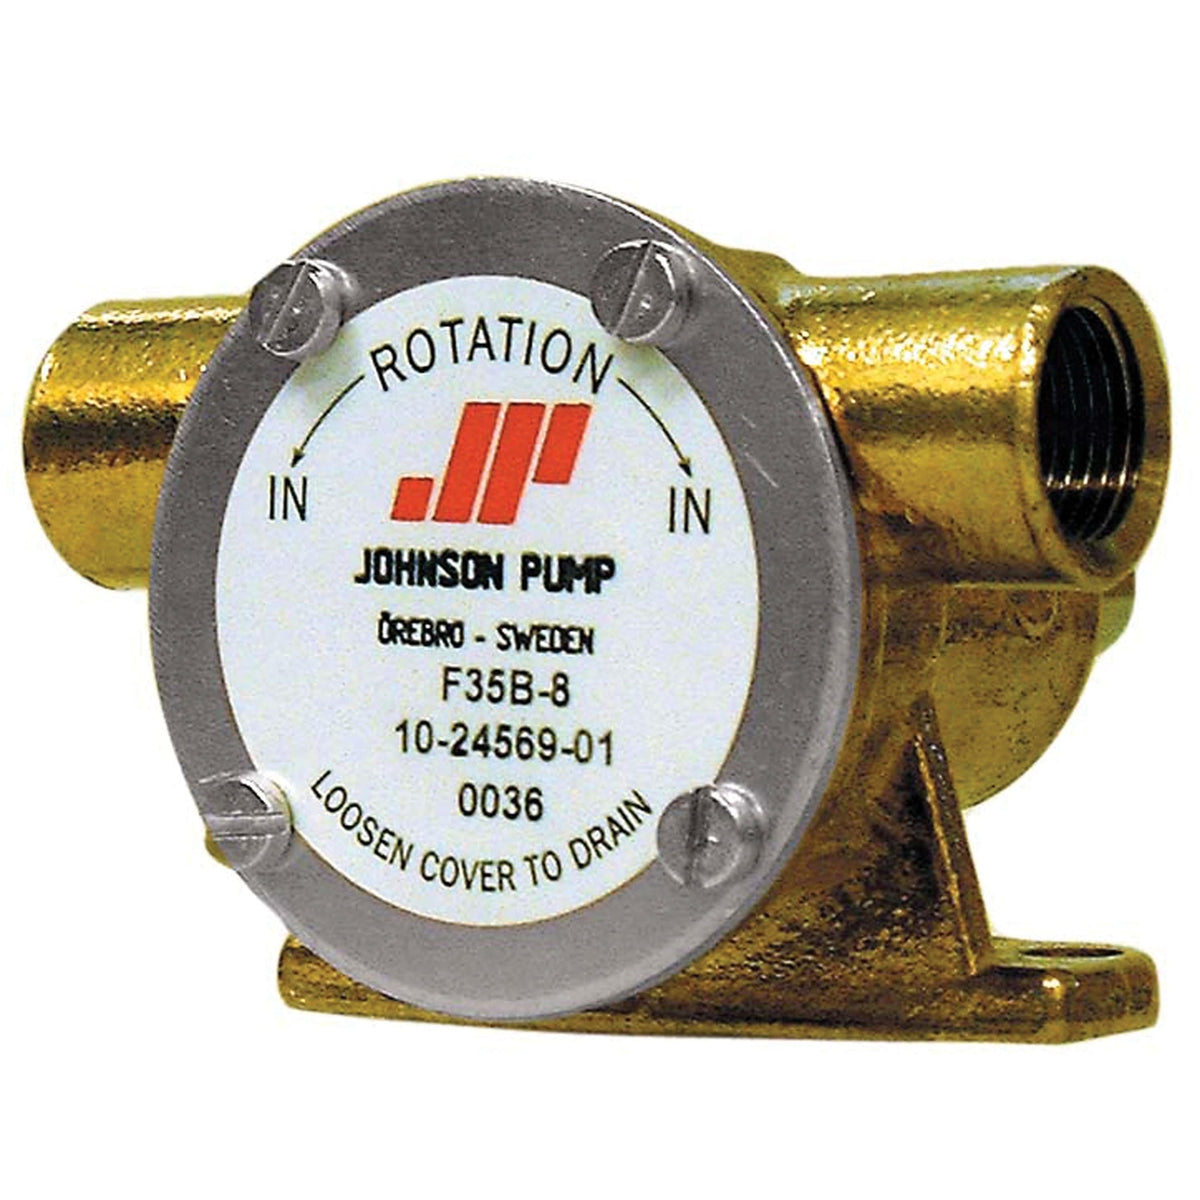 Johnson F35B-8007 Impeller Pump Mech Seal BSP Port #10-24569-01